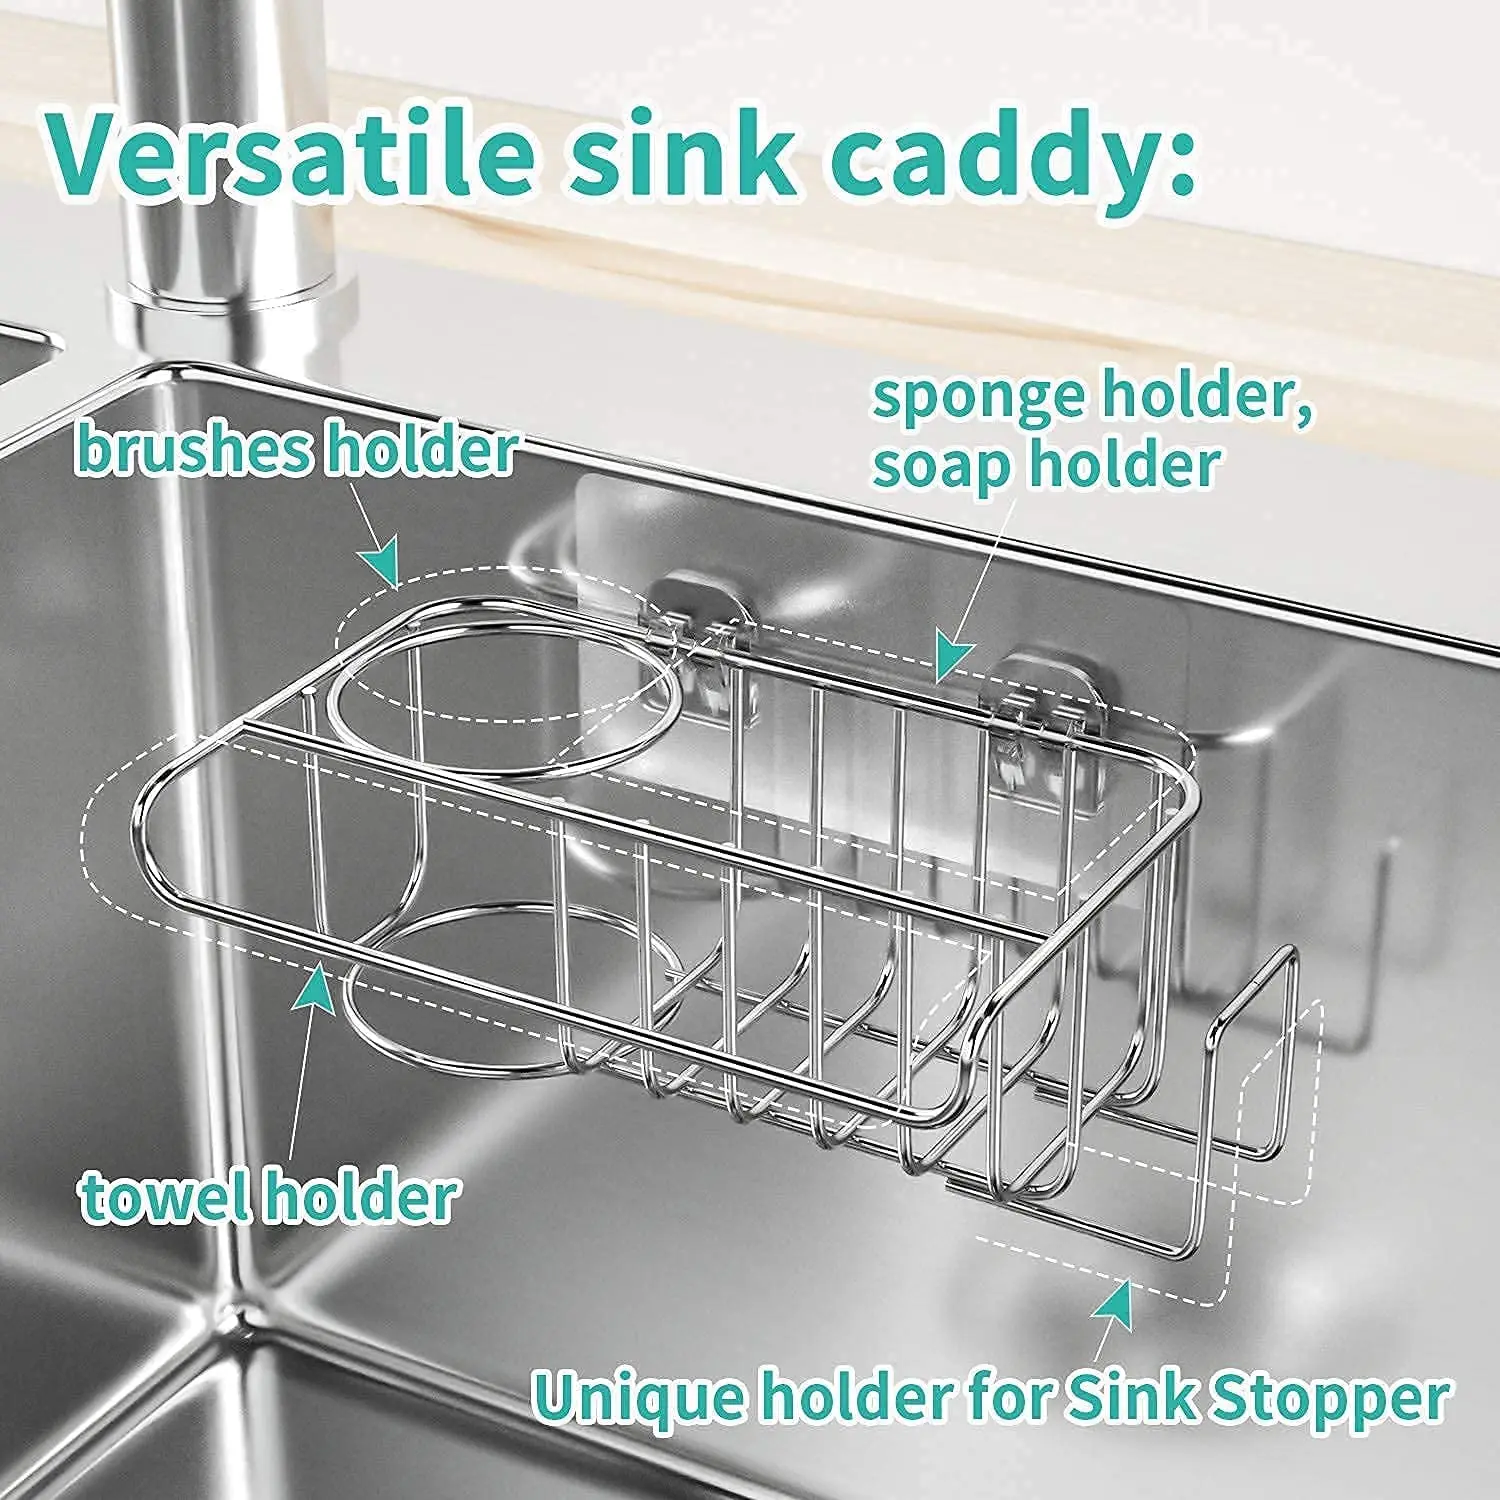 https://ae01.alicdn.com/kf/S32f164ca2dca43398185e5bcfb7c190d4/Kitchen-Sponge-Holder-Adhesive-Stainless-Steel-Sink-Brush-Sponges-Holder-Drain-Drying-Rack-Storage-Holder-Kitchen.jpg